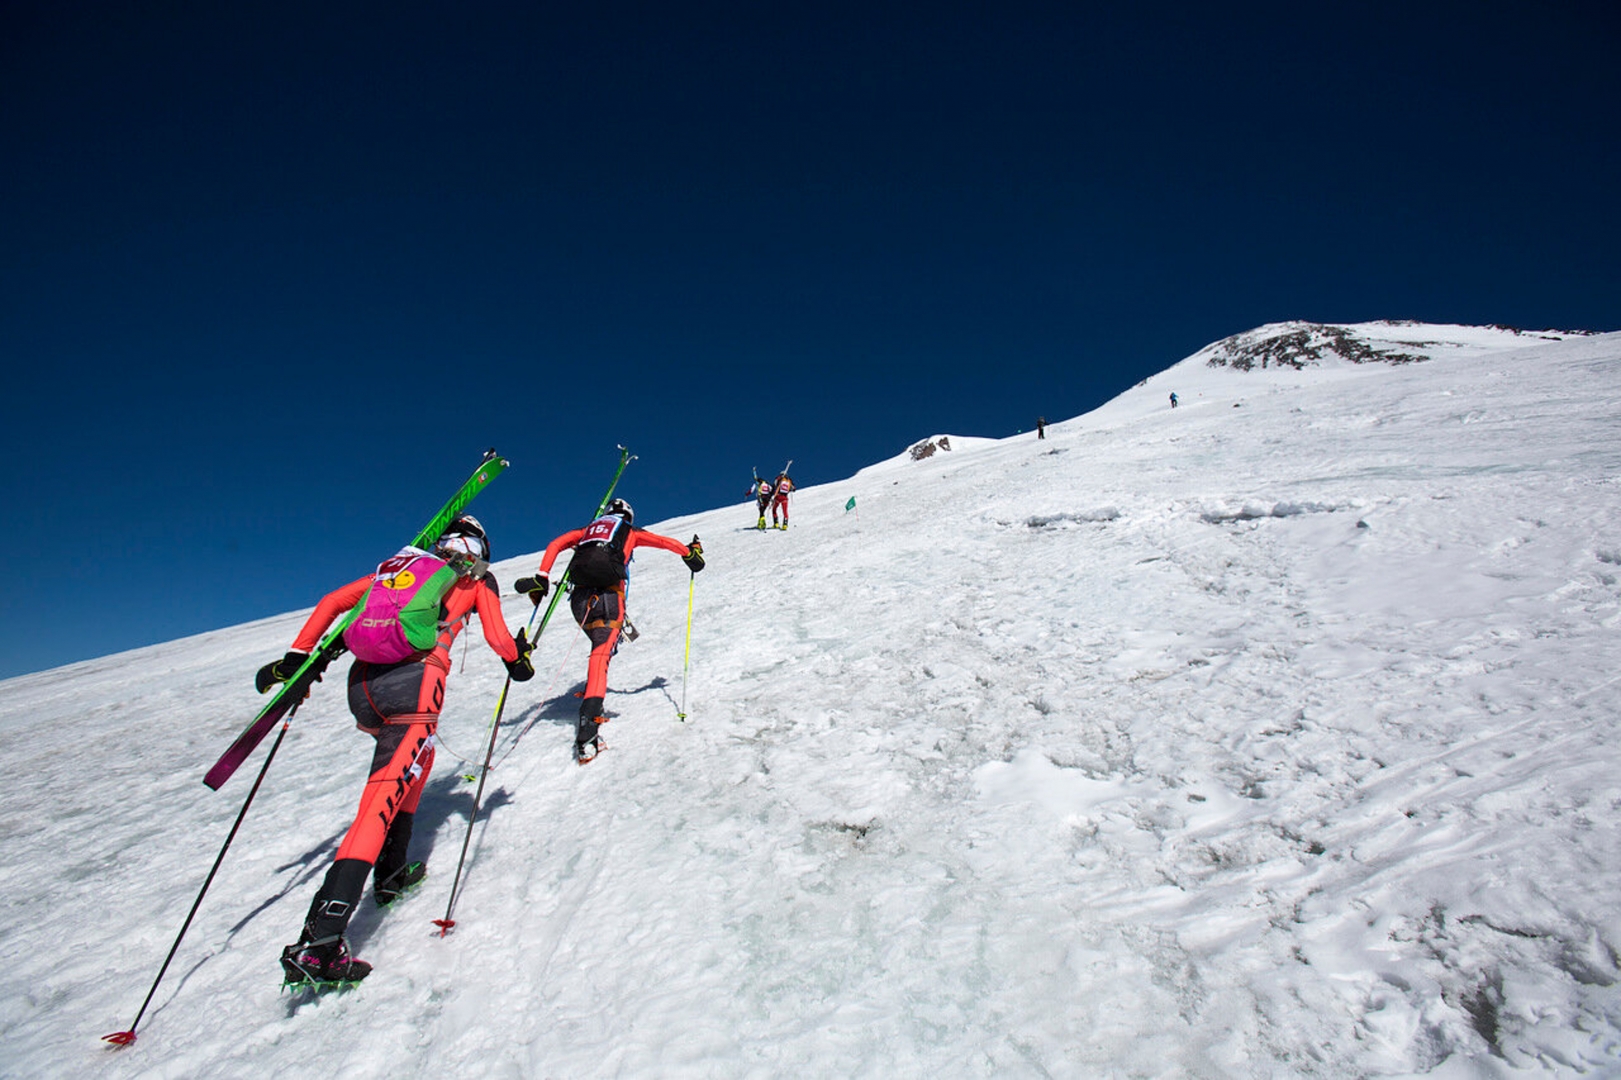 Ски-альпинисты на пути к вершине Эльбруса